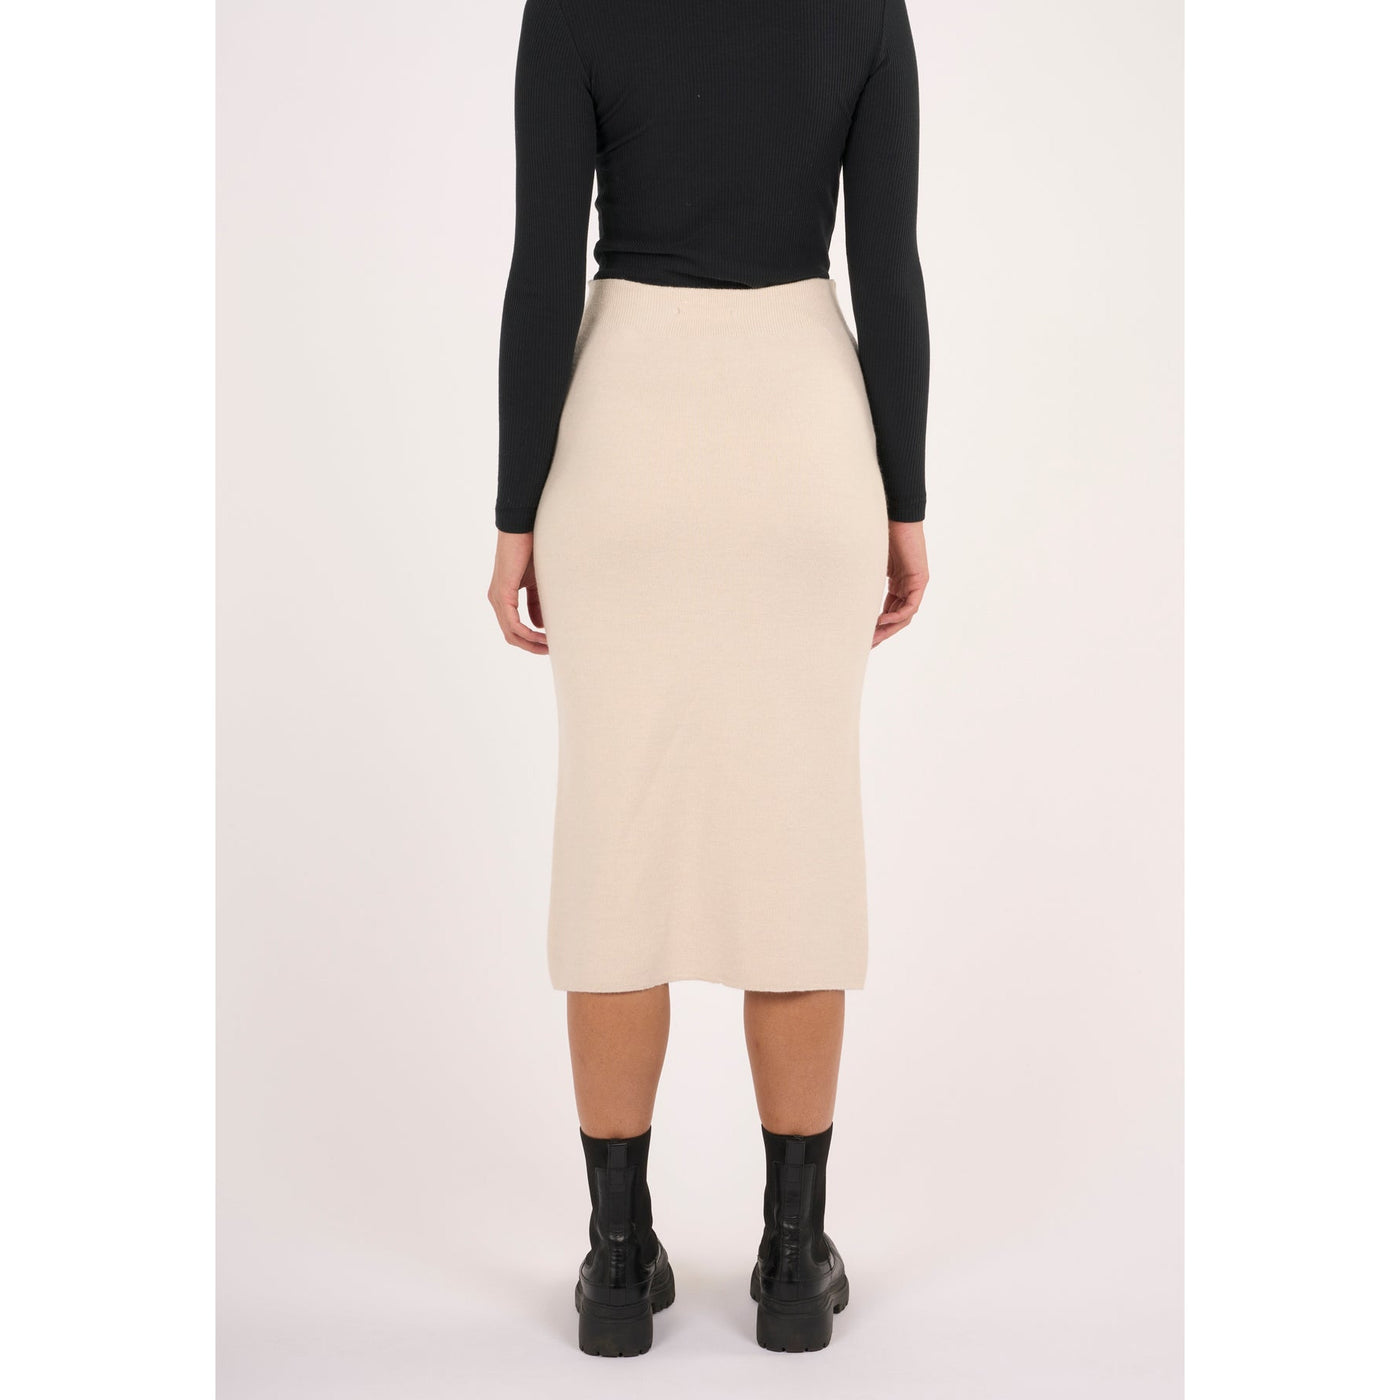 Midth length merino knit skirt